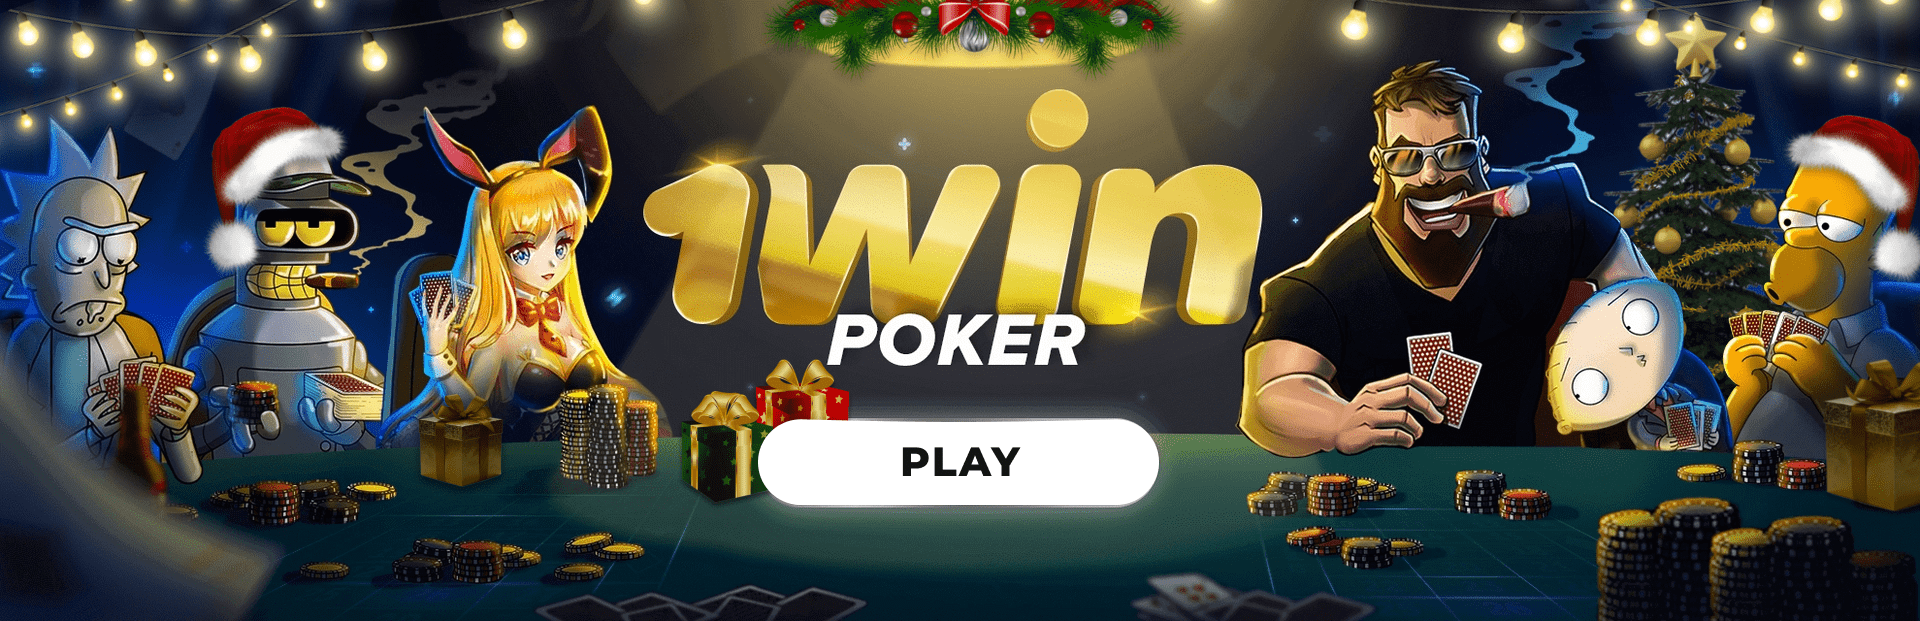 1win casino poker